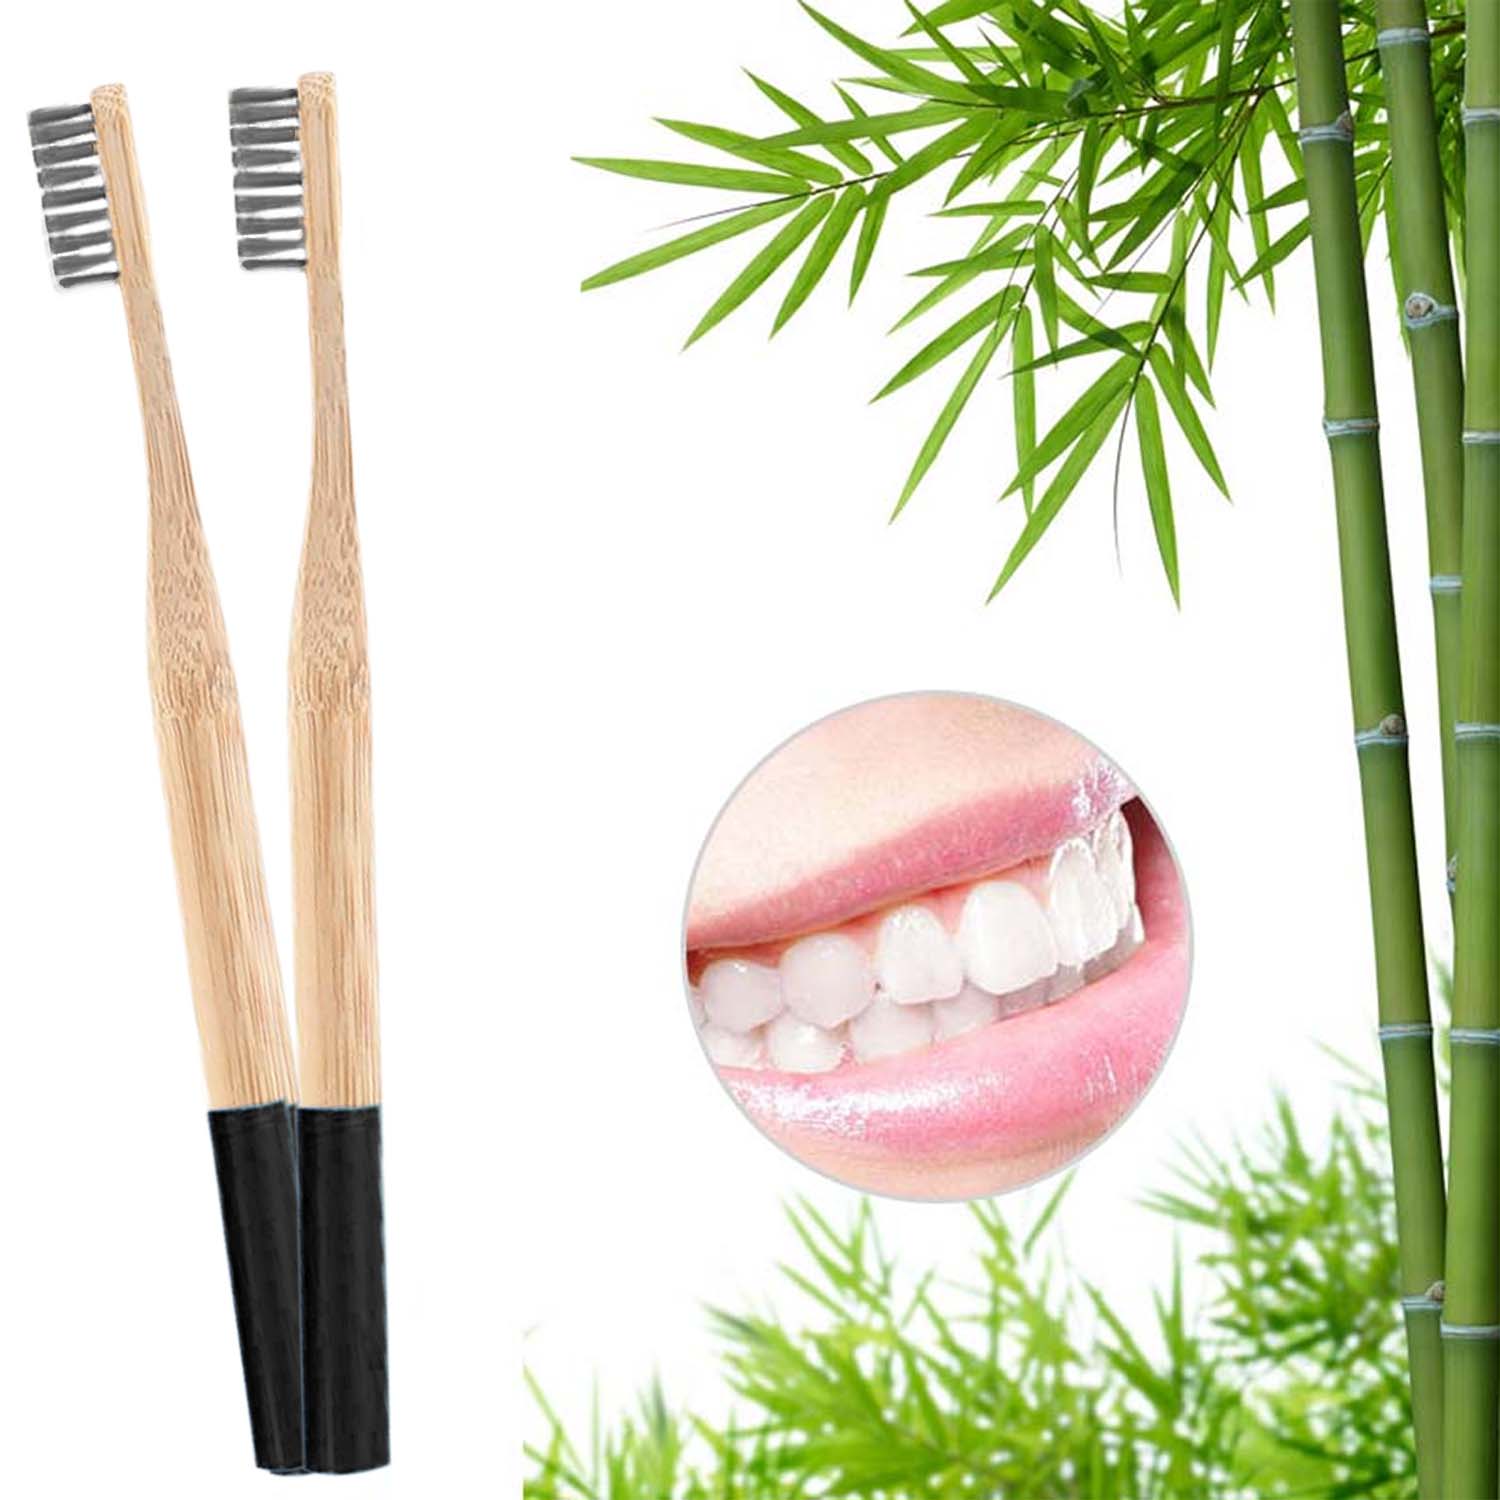 8er Set - Bambus Zahnbürsten - weiße Borsten